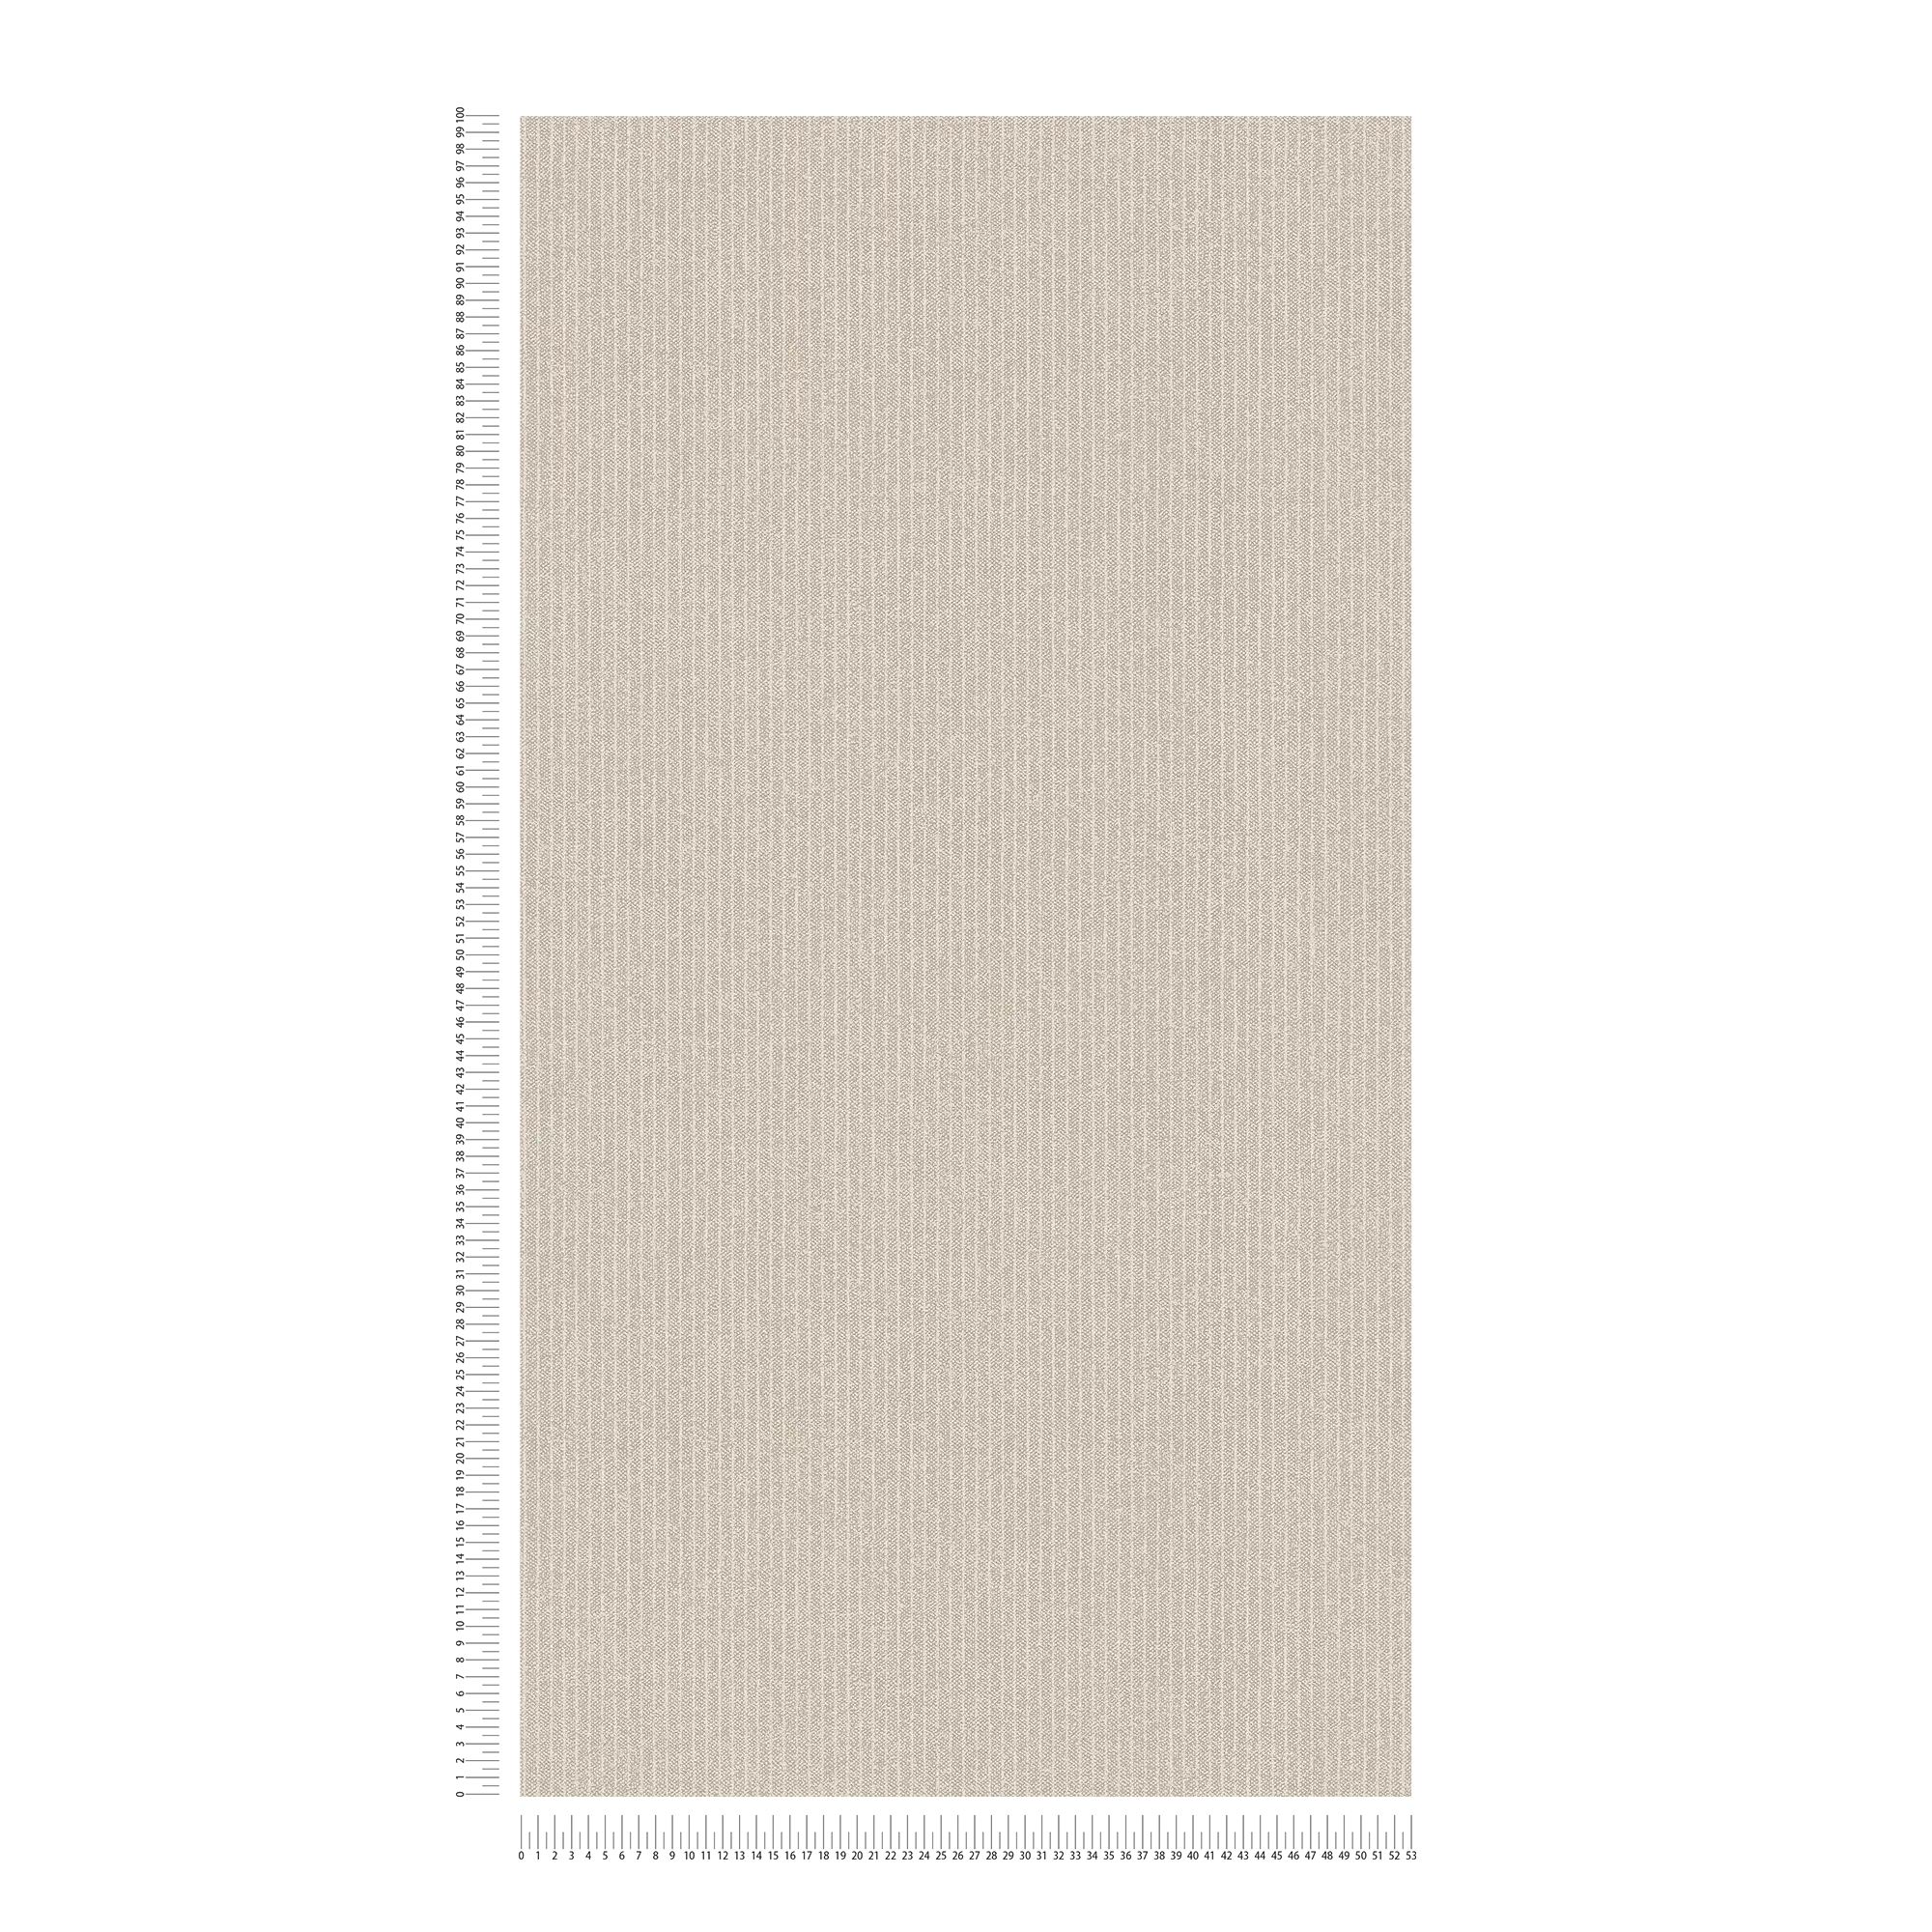             Lignes papier peint rayures étroites, aspect lin - beige, marron
        